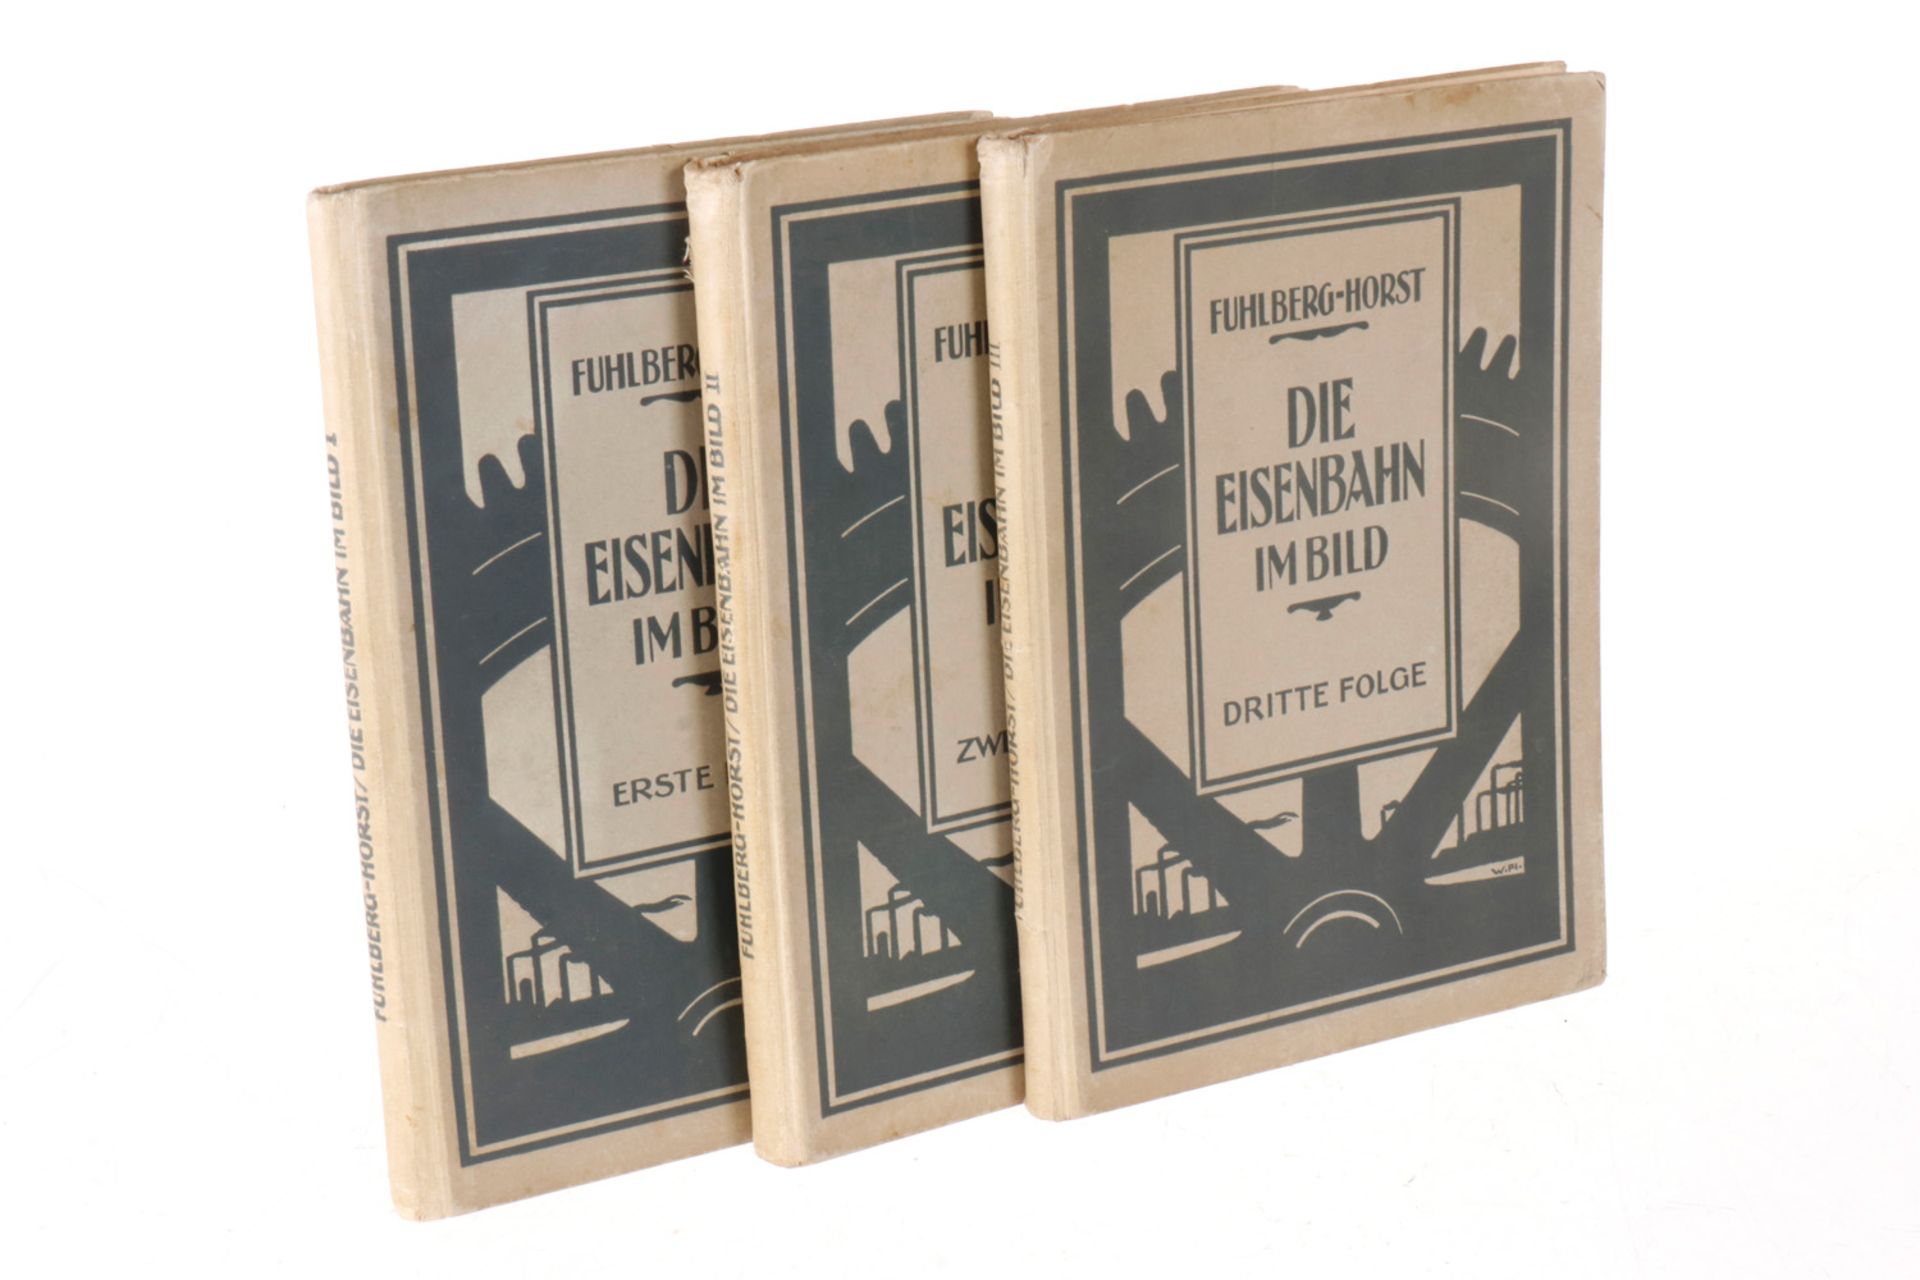 3 Fuhlberg-Horst Bücher "Die Eisenbahn im Bild" Band 1 bis 3, 1924/25, Alterungsspuren